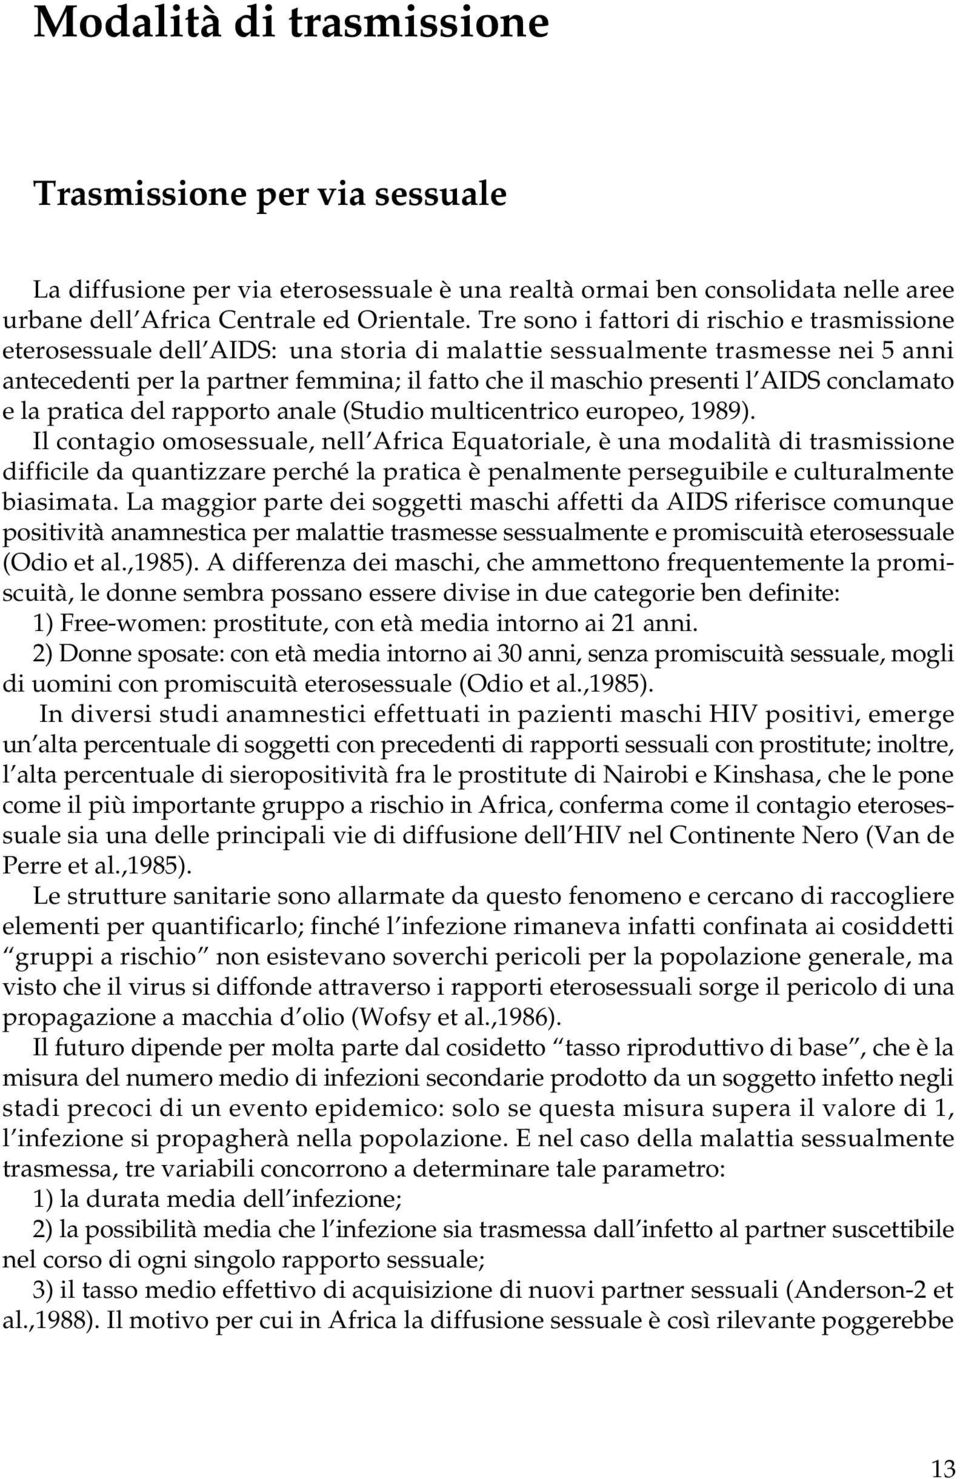 AIDS conclamato e la pratica del rapporto anale (Studio multicentrico europeo, 1989).